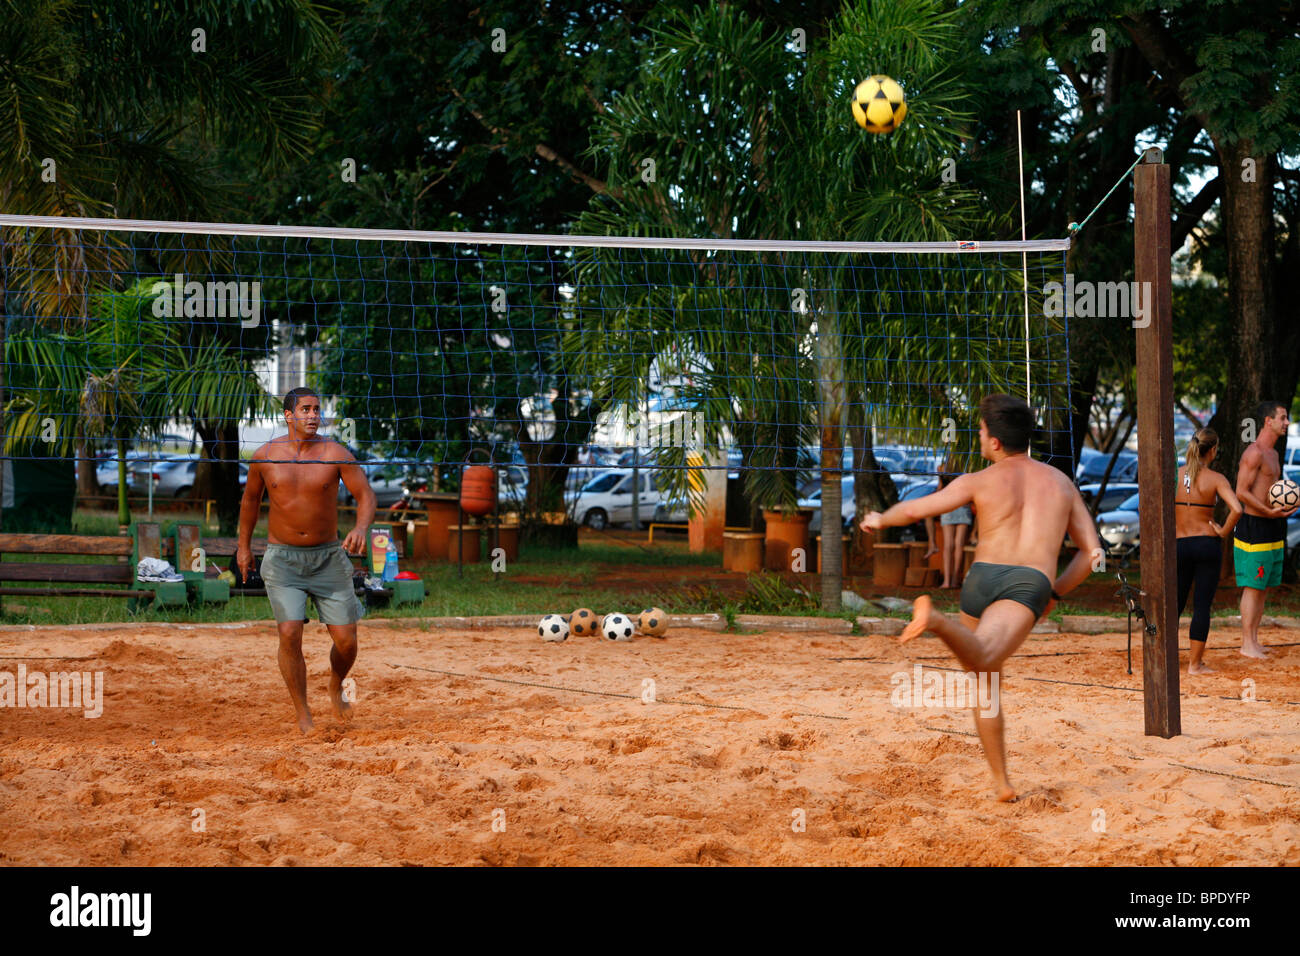 Gli uomini la riproduzione di foot volley al Parque Cidade Sarah Kubitschek, Brasilia, Brasile. Foto Stock